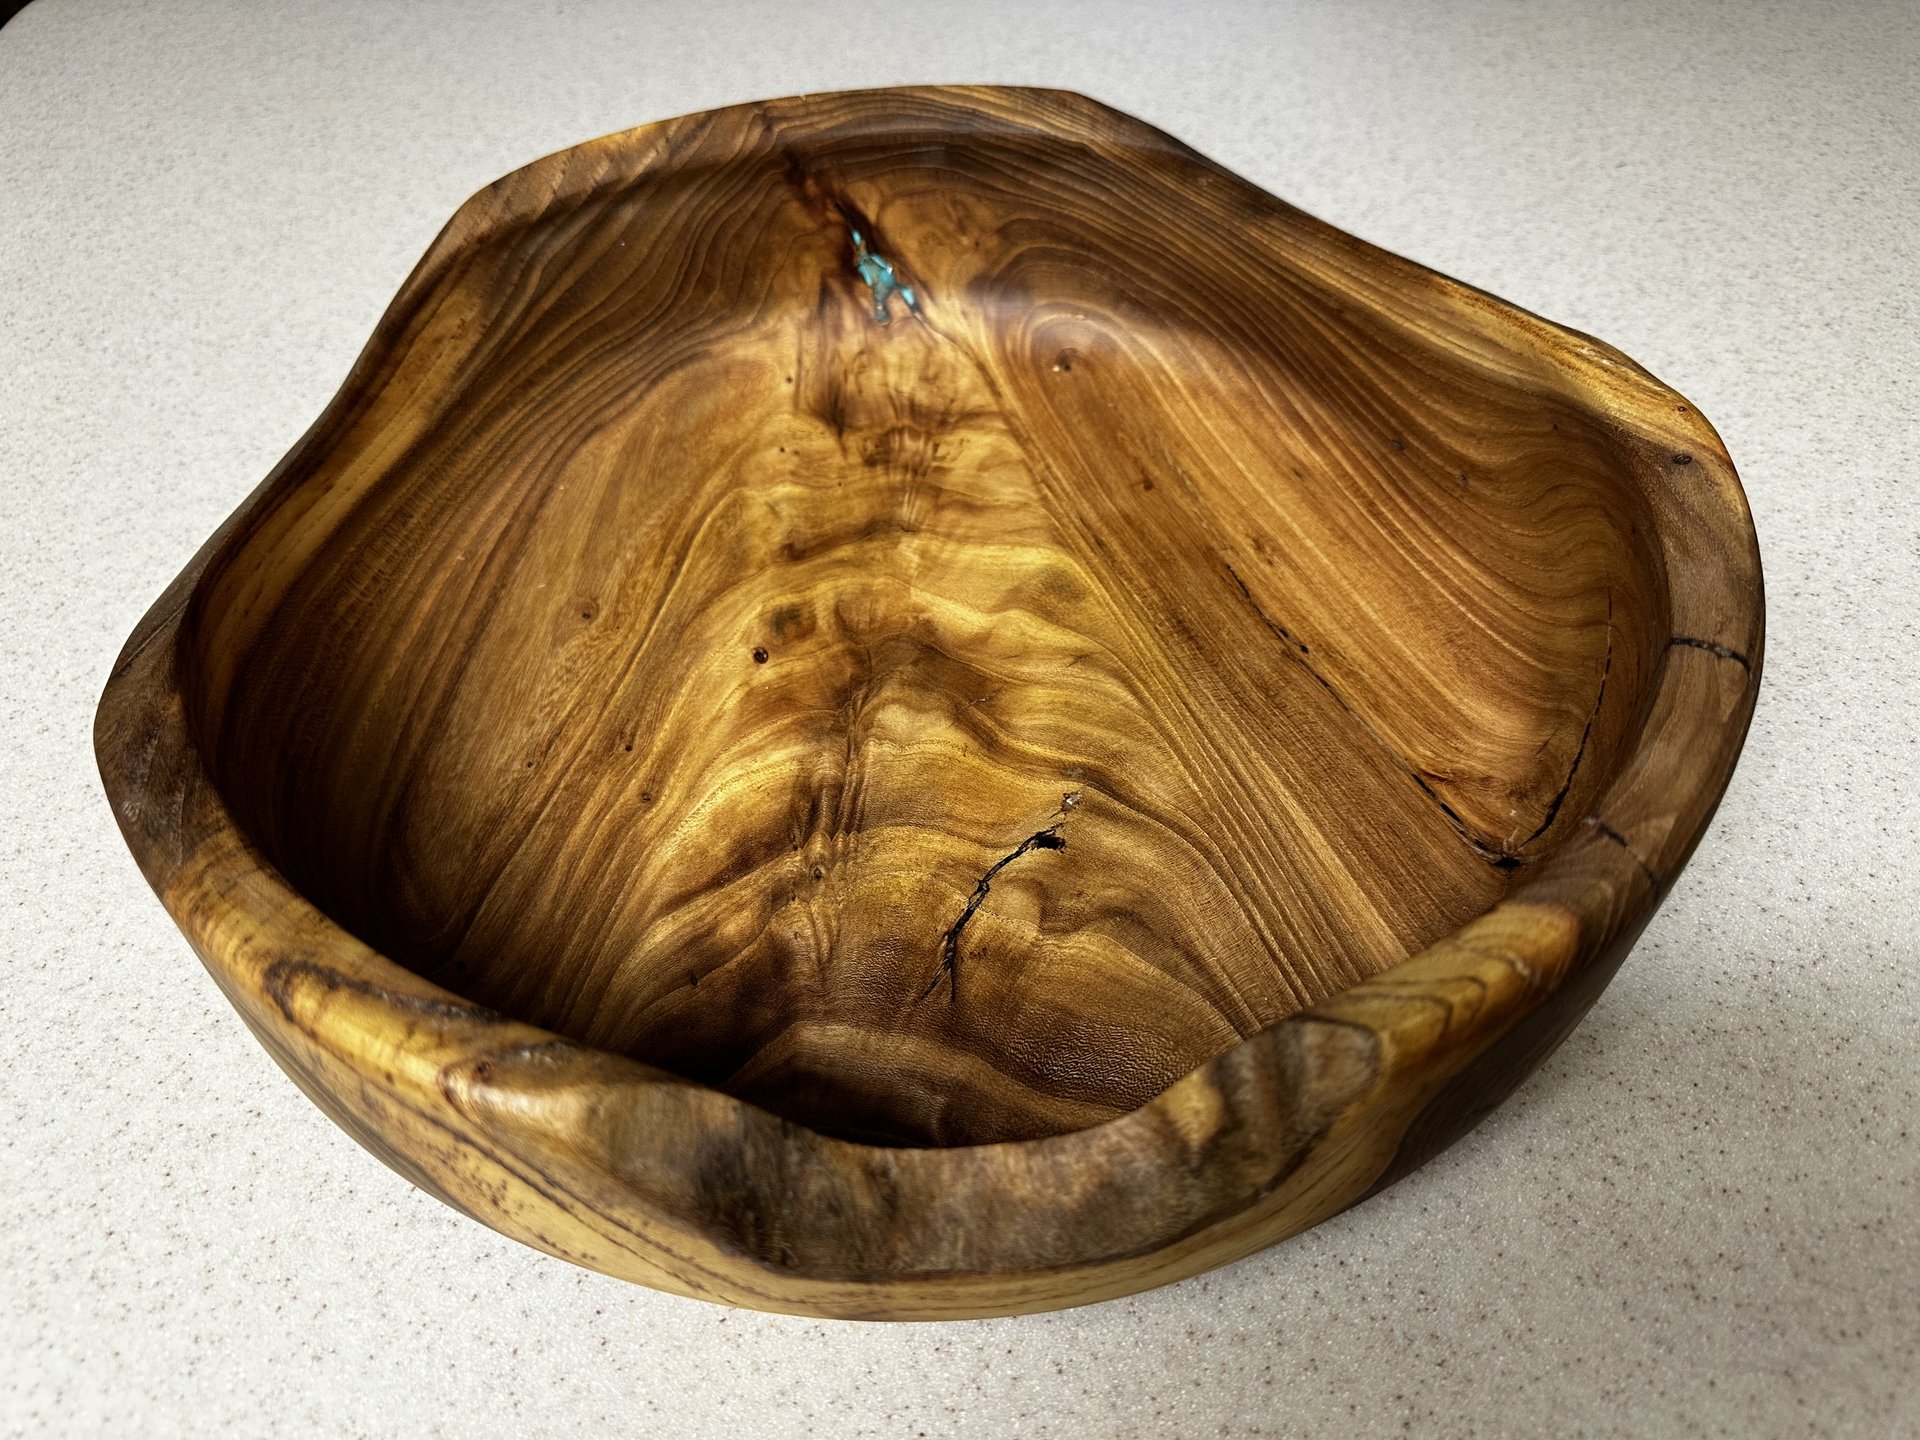 Cottonwood fruit bowl